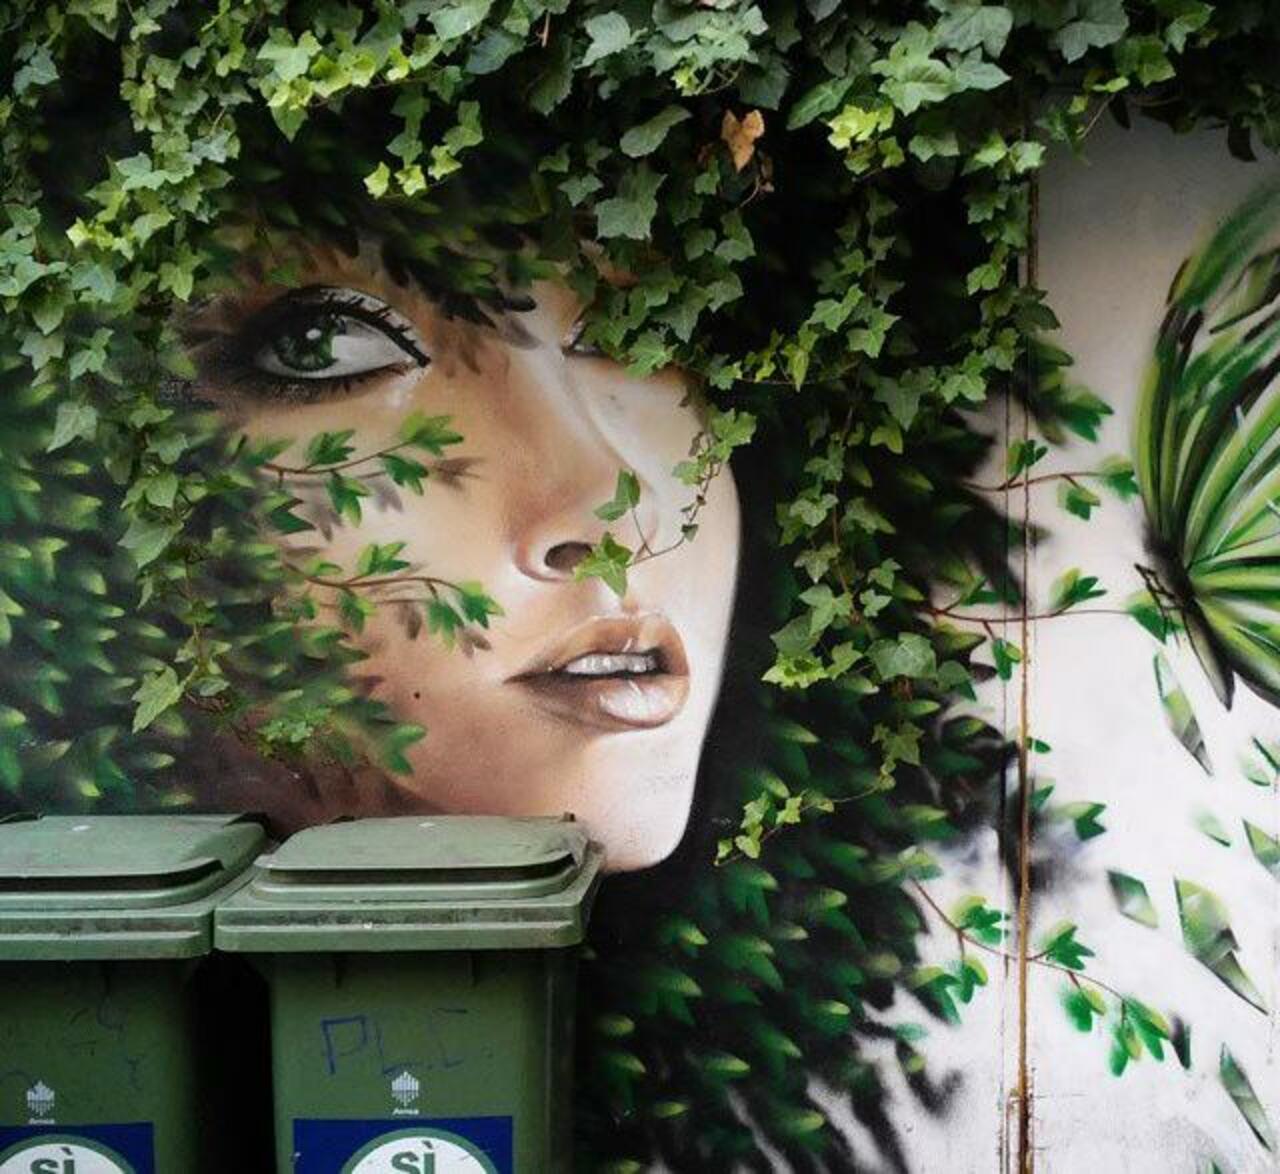 When Street Art meets nature by Dasxa in Isola, Millan 

#art #arte #graffiti #streetart http://t.co/nrdWAxsZbl